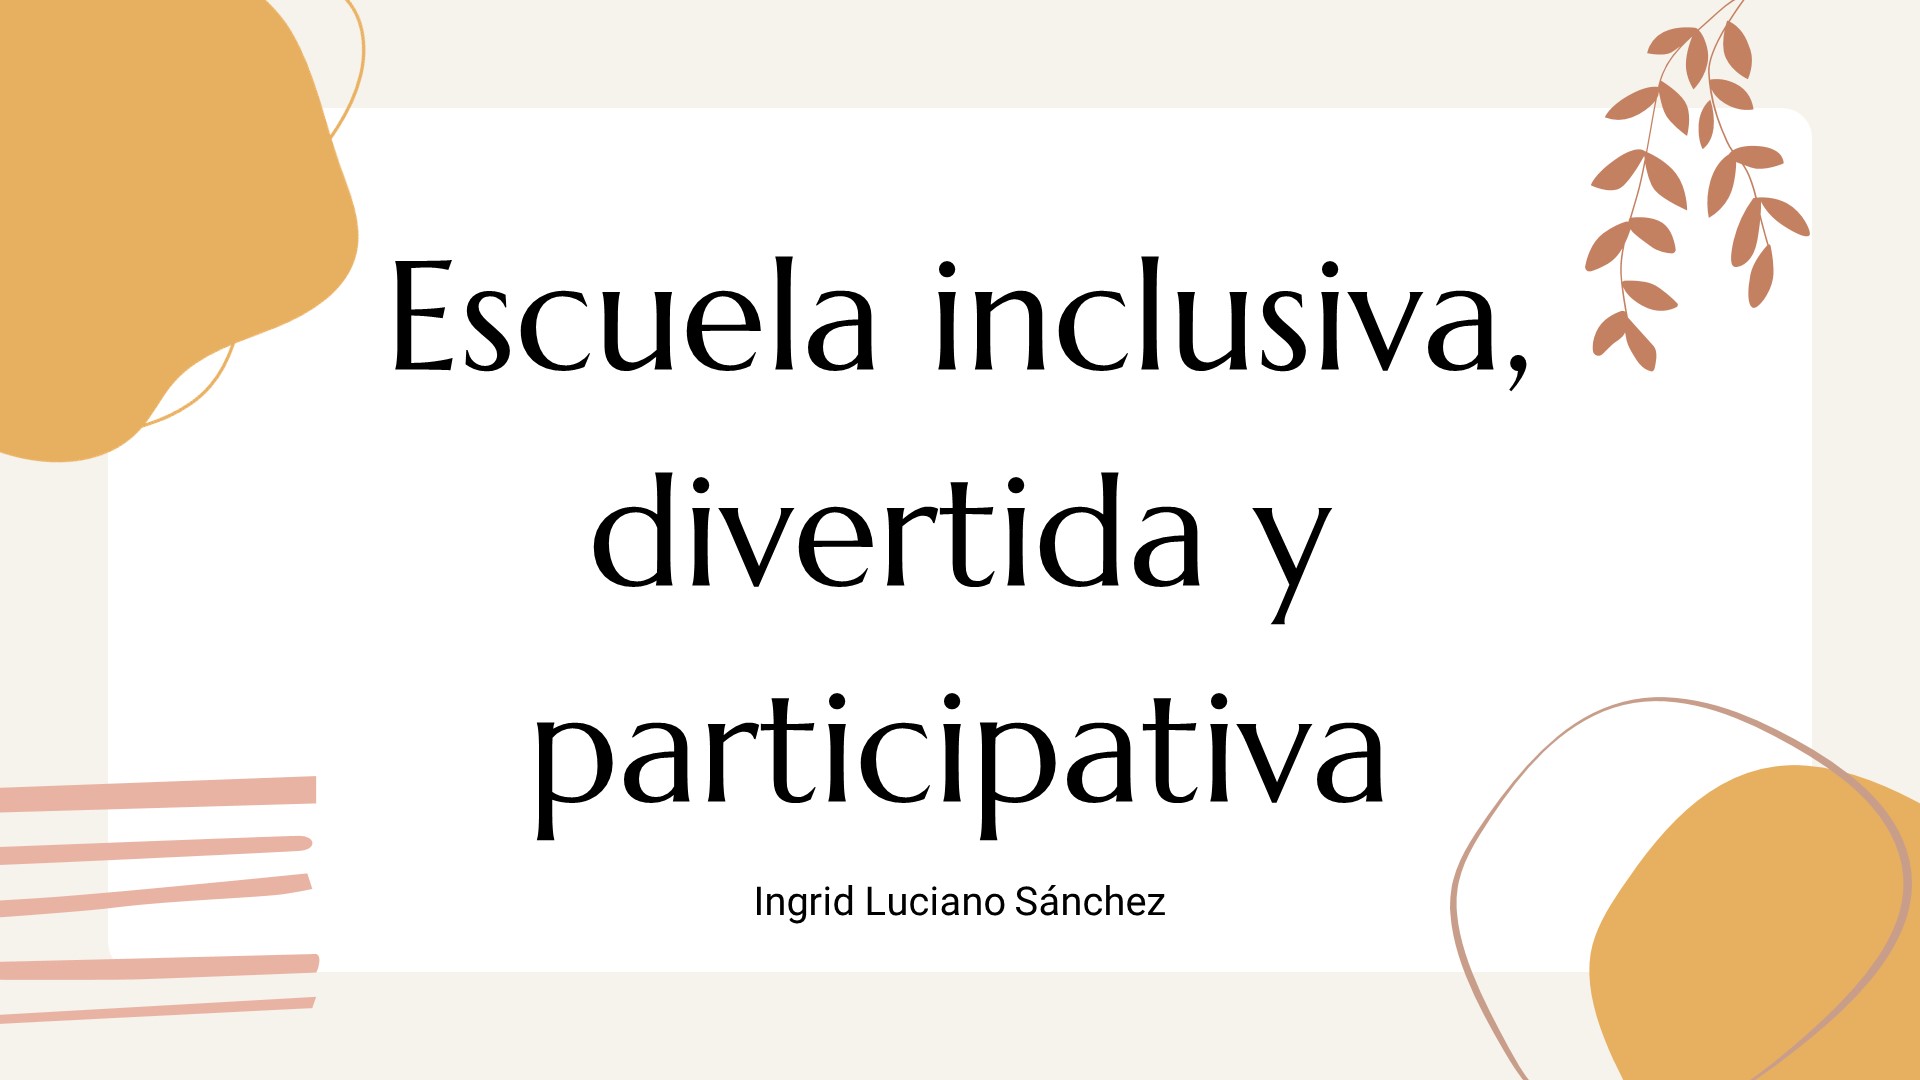 "Escuela inclusiva, divertida y participativa" - Ingrid Luciano Sánchez.